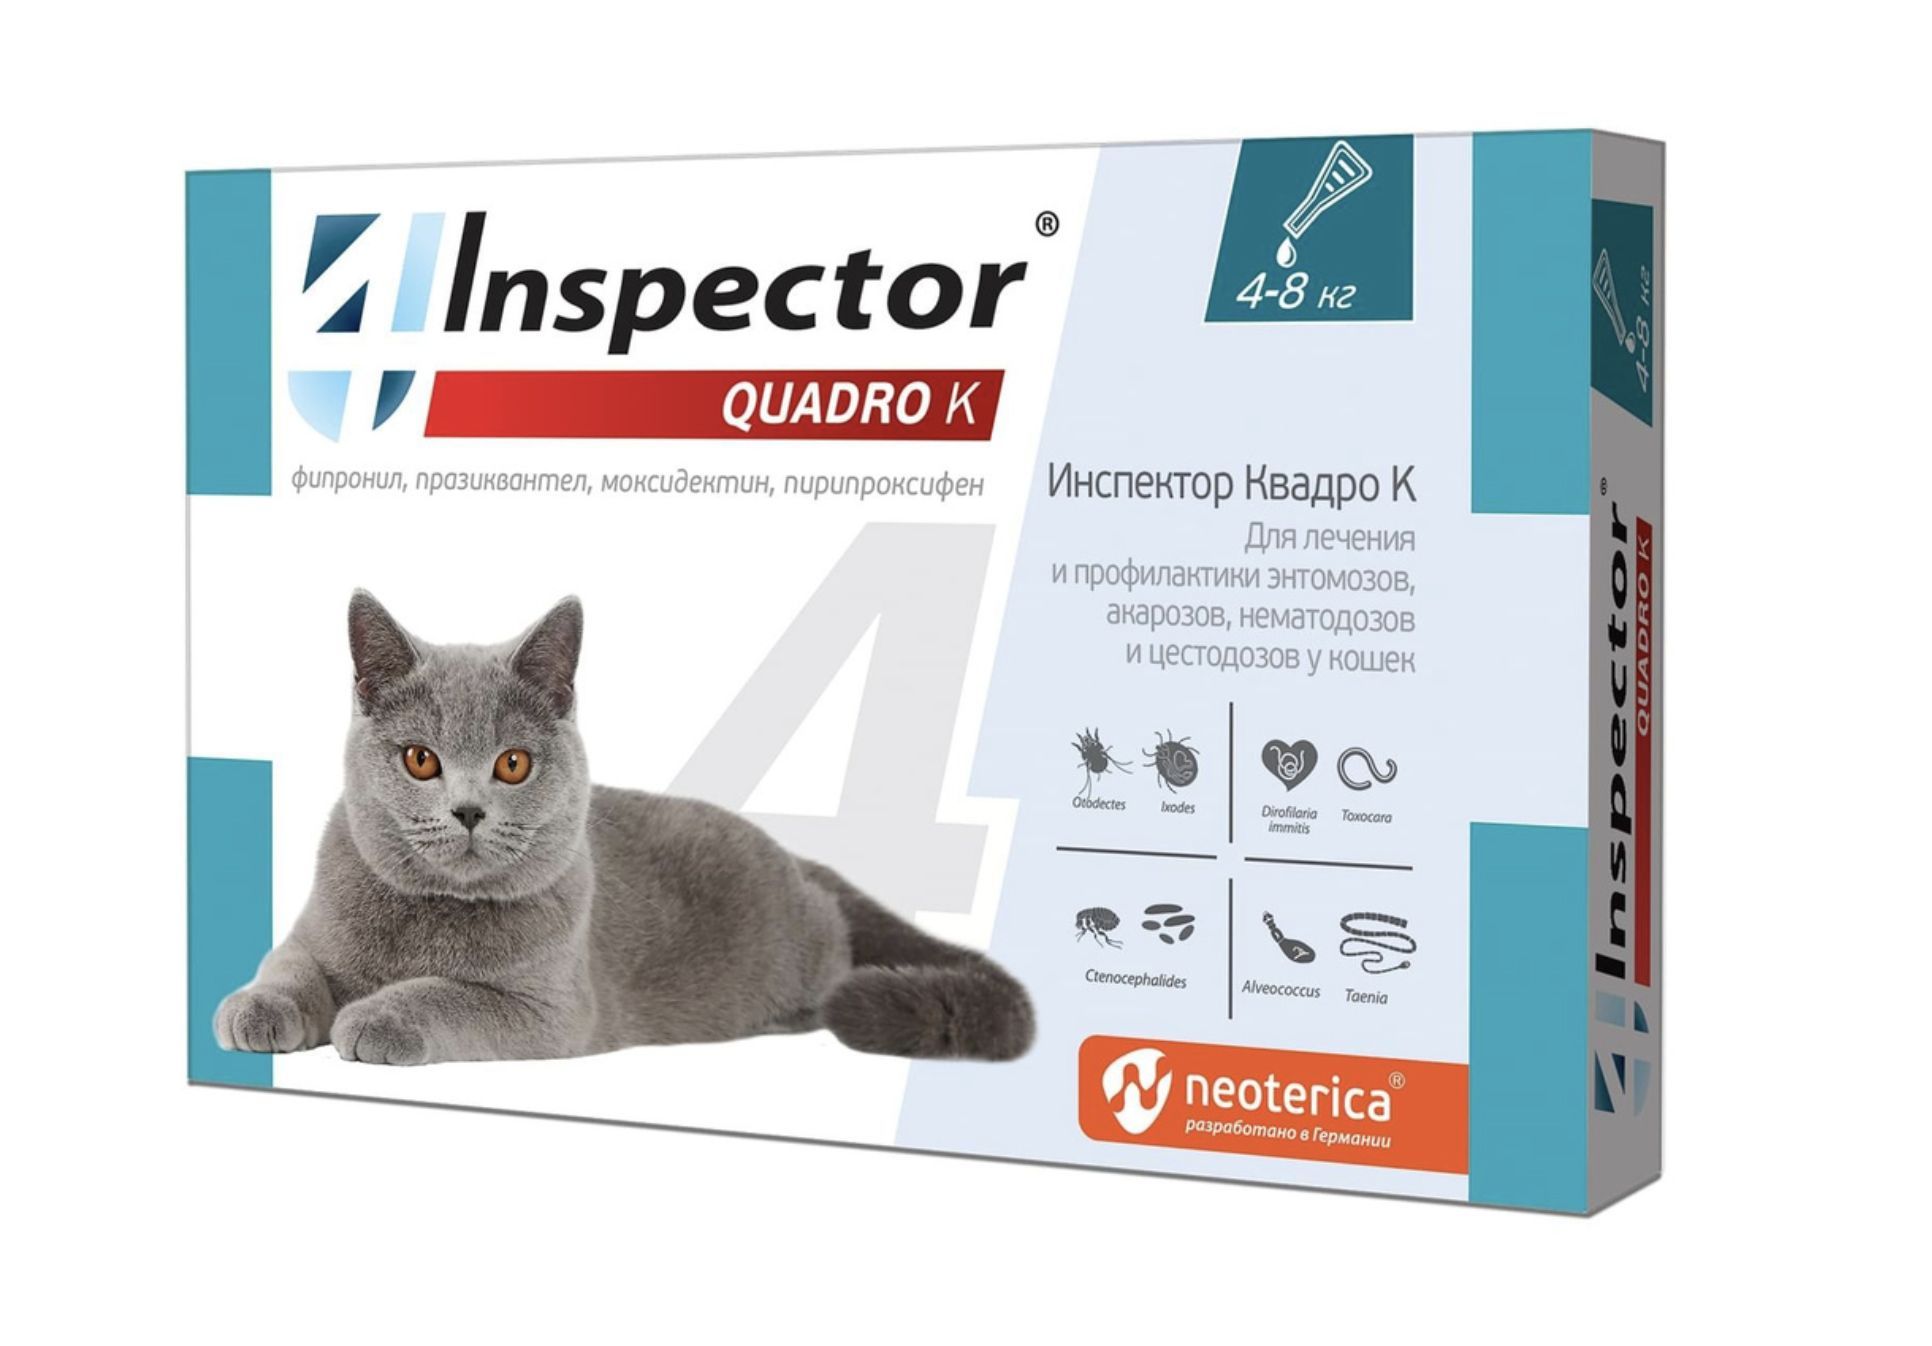 Капли инспектор для кошек купить. Капли для кошек от блох и глистов Inspector. Инспектор Квадро капли для кошек. Инспектор капли для кошек 1-4 кг. Капли для кошек "Inspector Quadro" 1-4 кг от блох.